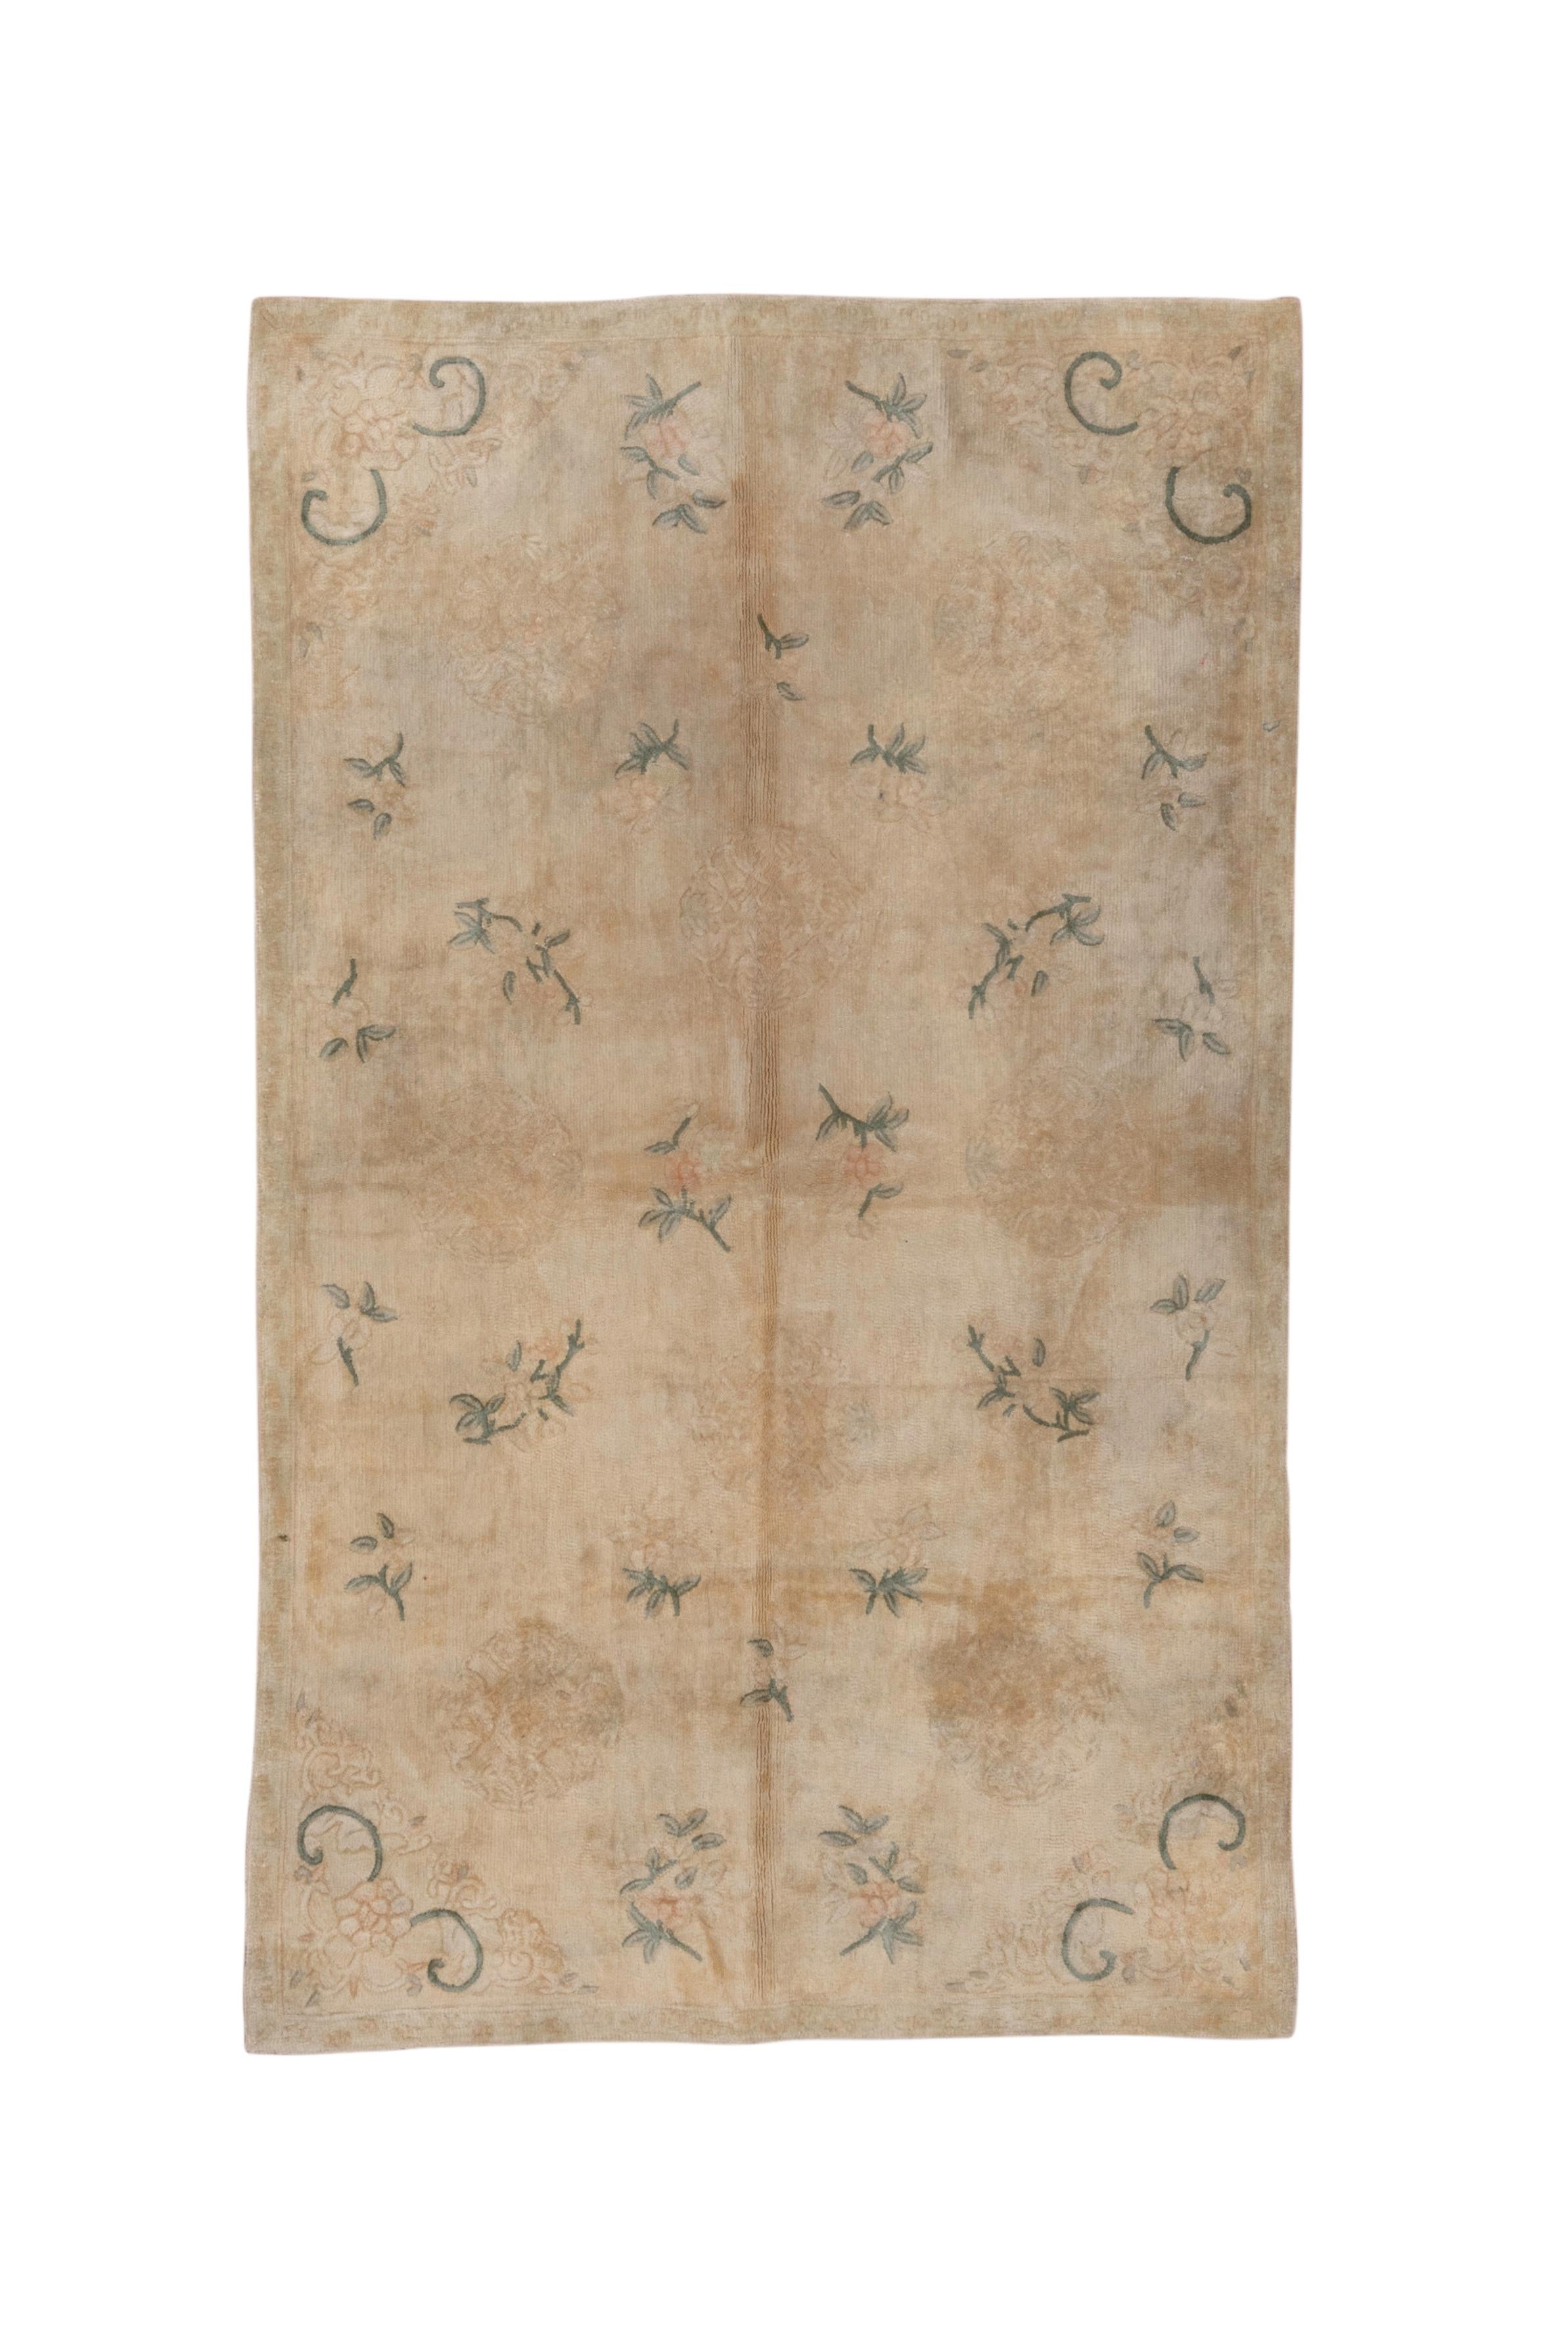 Dieses gut erhaltene Stück auf Baumwolle mit Flor, aber eher genadelt als geknüpft, zeigt ein beigefarbenes Feld mit einem vierfach symmetrischen, verstreuten Muster aus Blütensprays und Rosetten mit markanten Voluten in den Ecken. Schmale Ränder